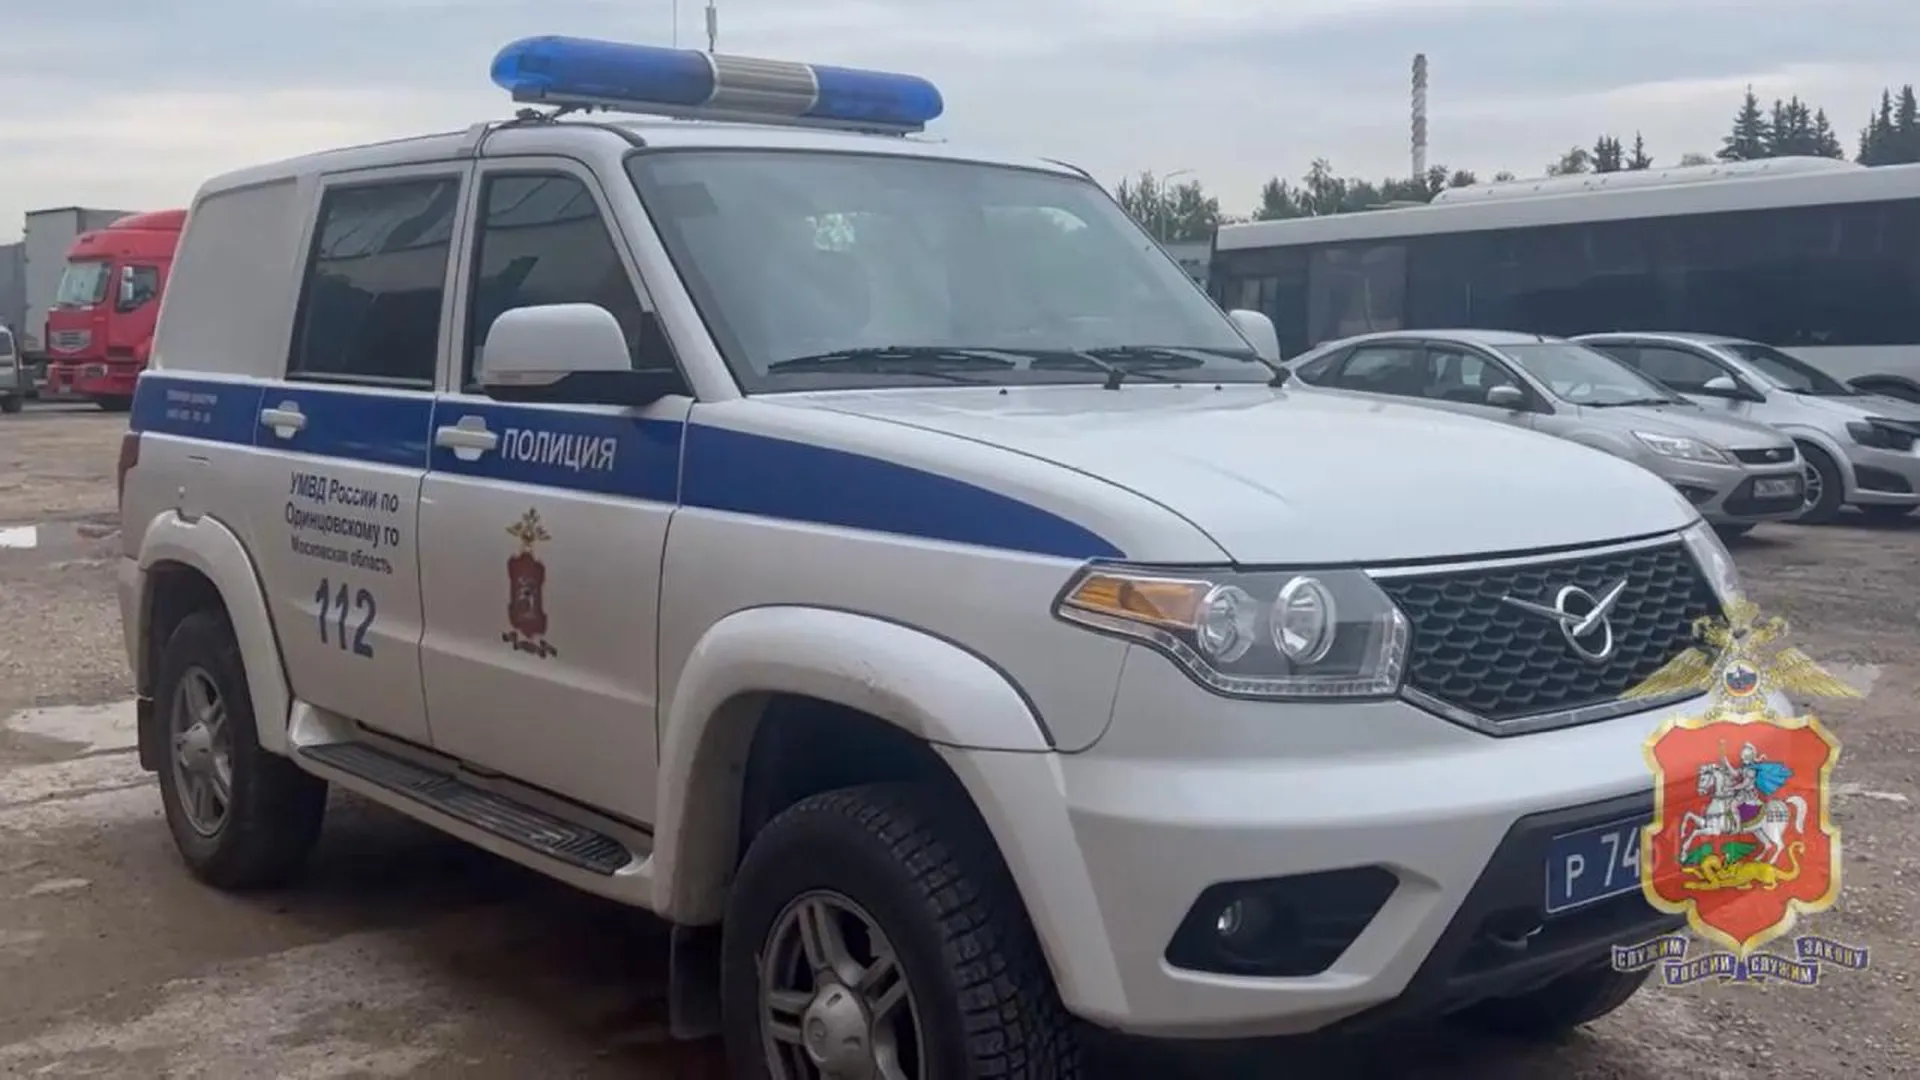 Женщину, совершившую кражу, задержали полицейские в подмосковном Одинцово